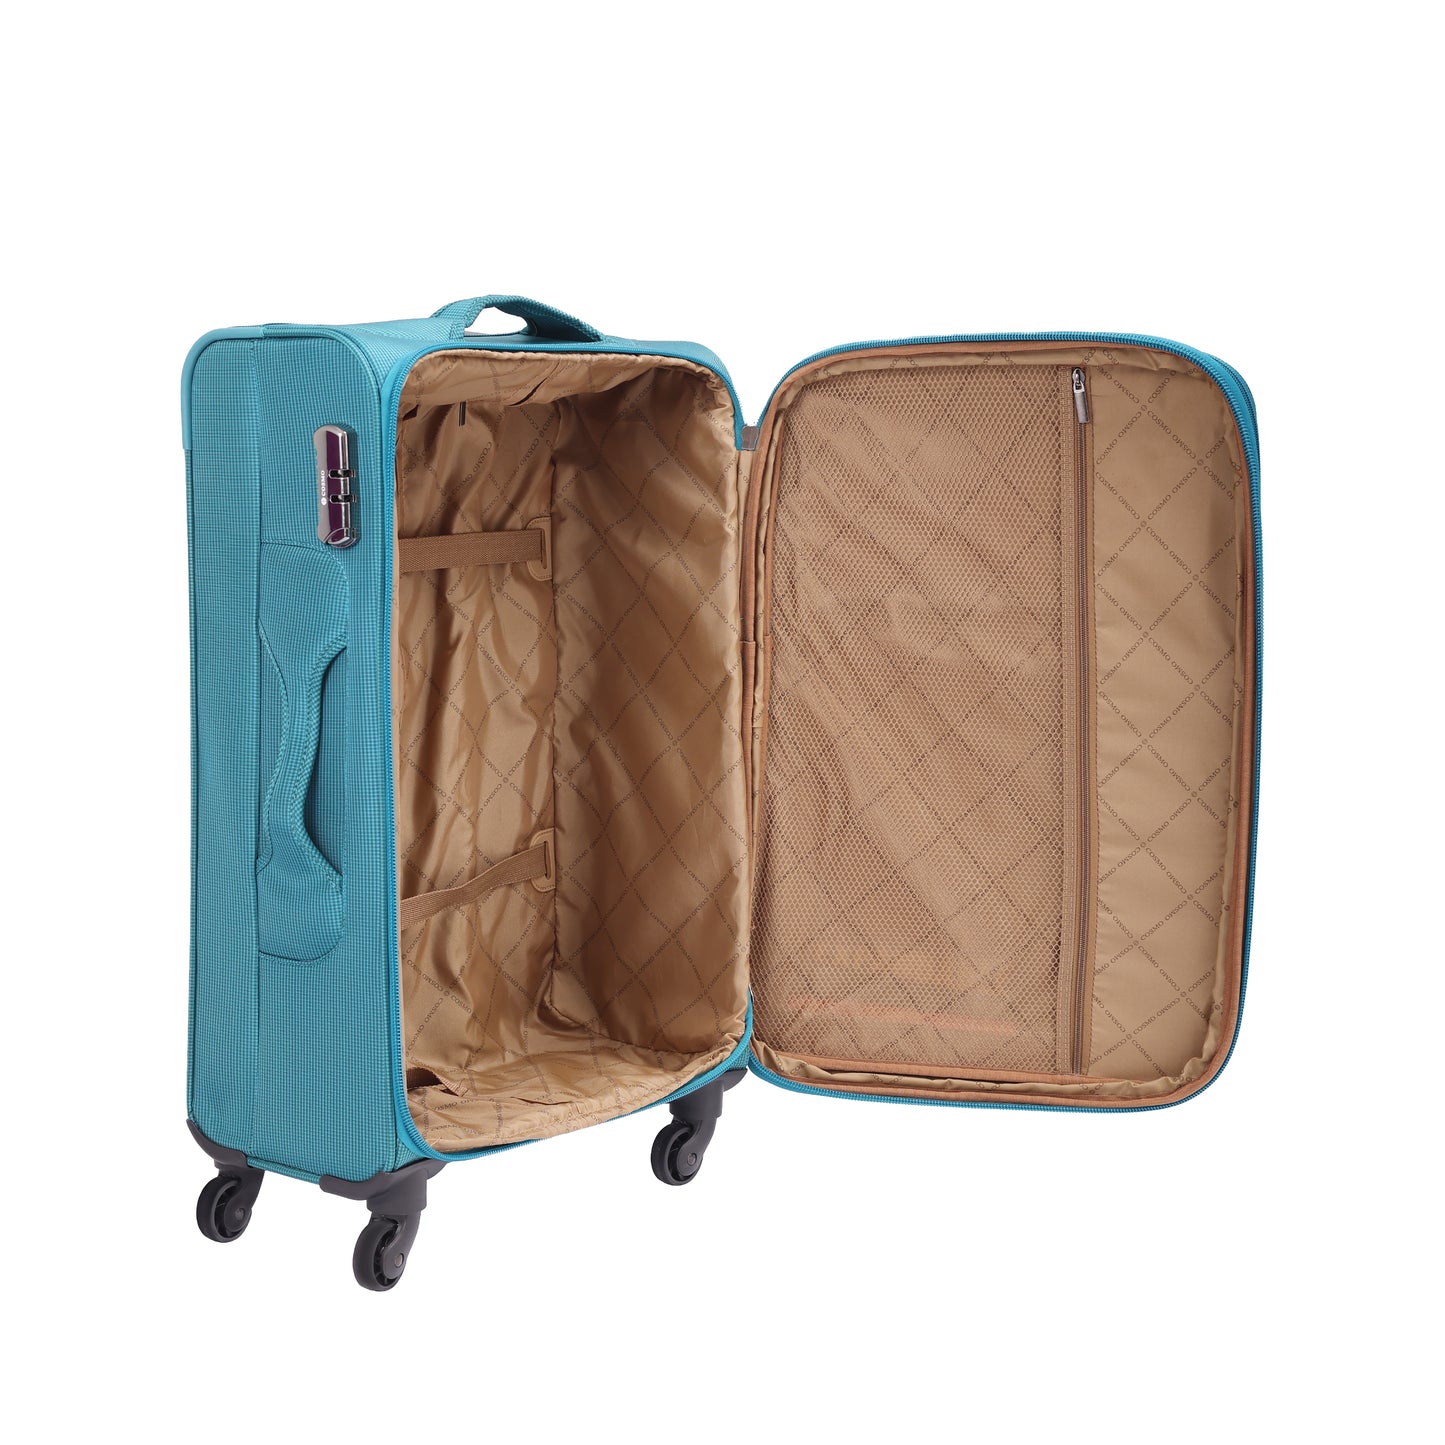 Cosmo Skate 4W 70 cm Soft Luggage Trolley Case